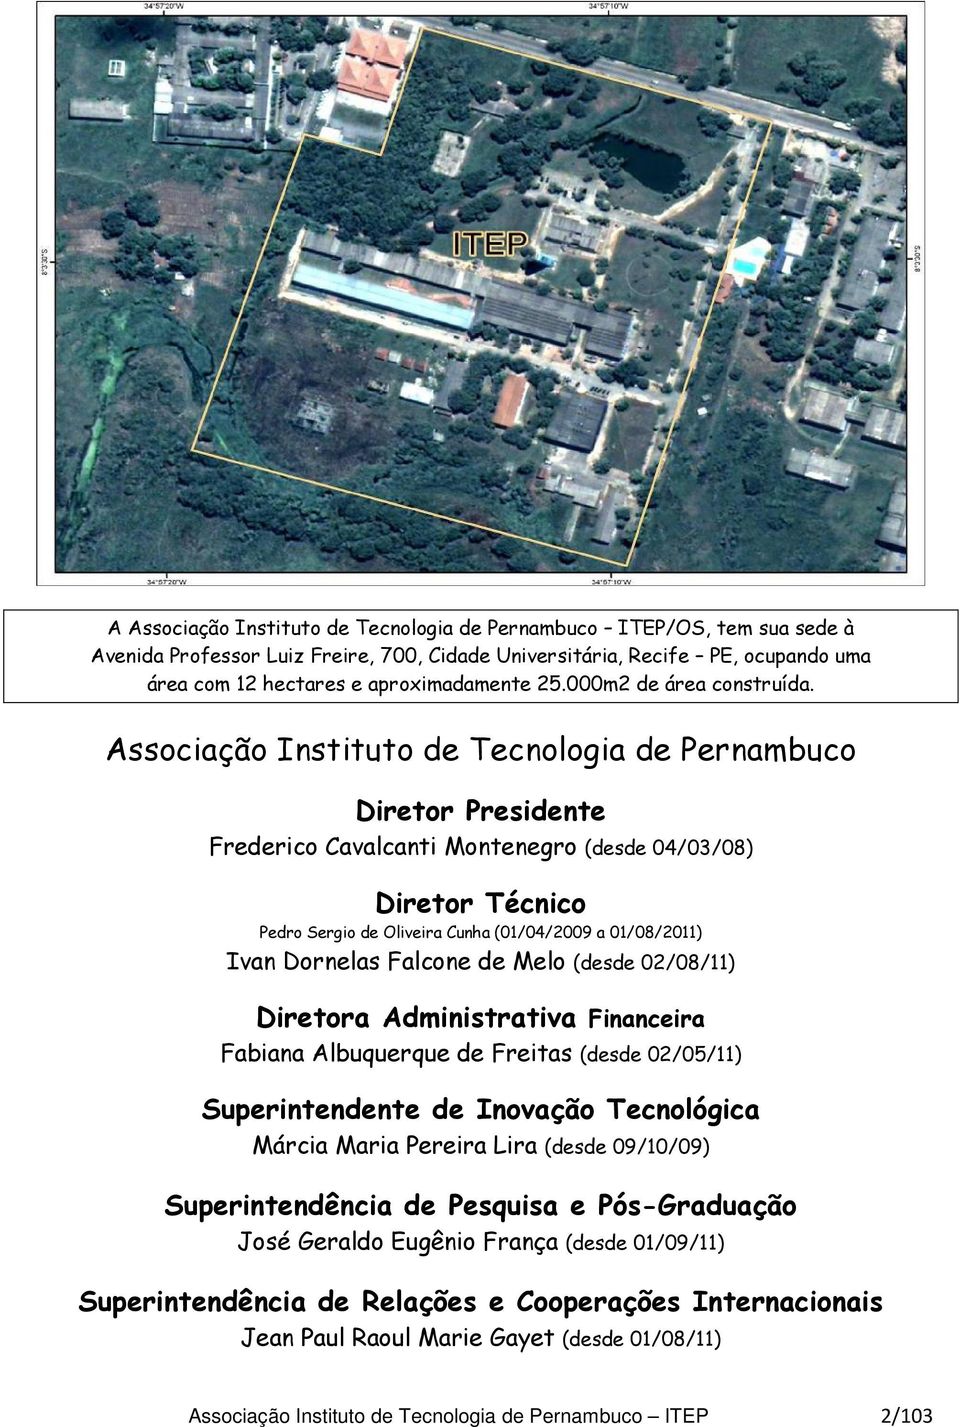 Associação Instituto de Tecnologia de Pernambuco Diretor Presidente Frederico Cavalcanti Montenegro (desde 04/03/08) Diretor Técnico Pedro Sergio de Oliveira Cunha (01/04/2009 a 01/08/2011) Ivan